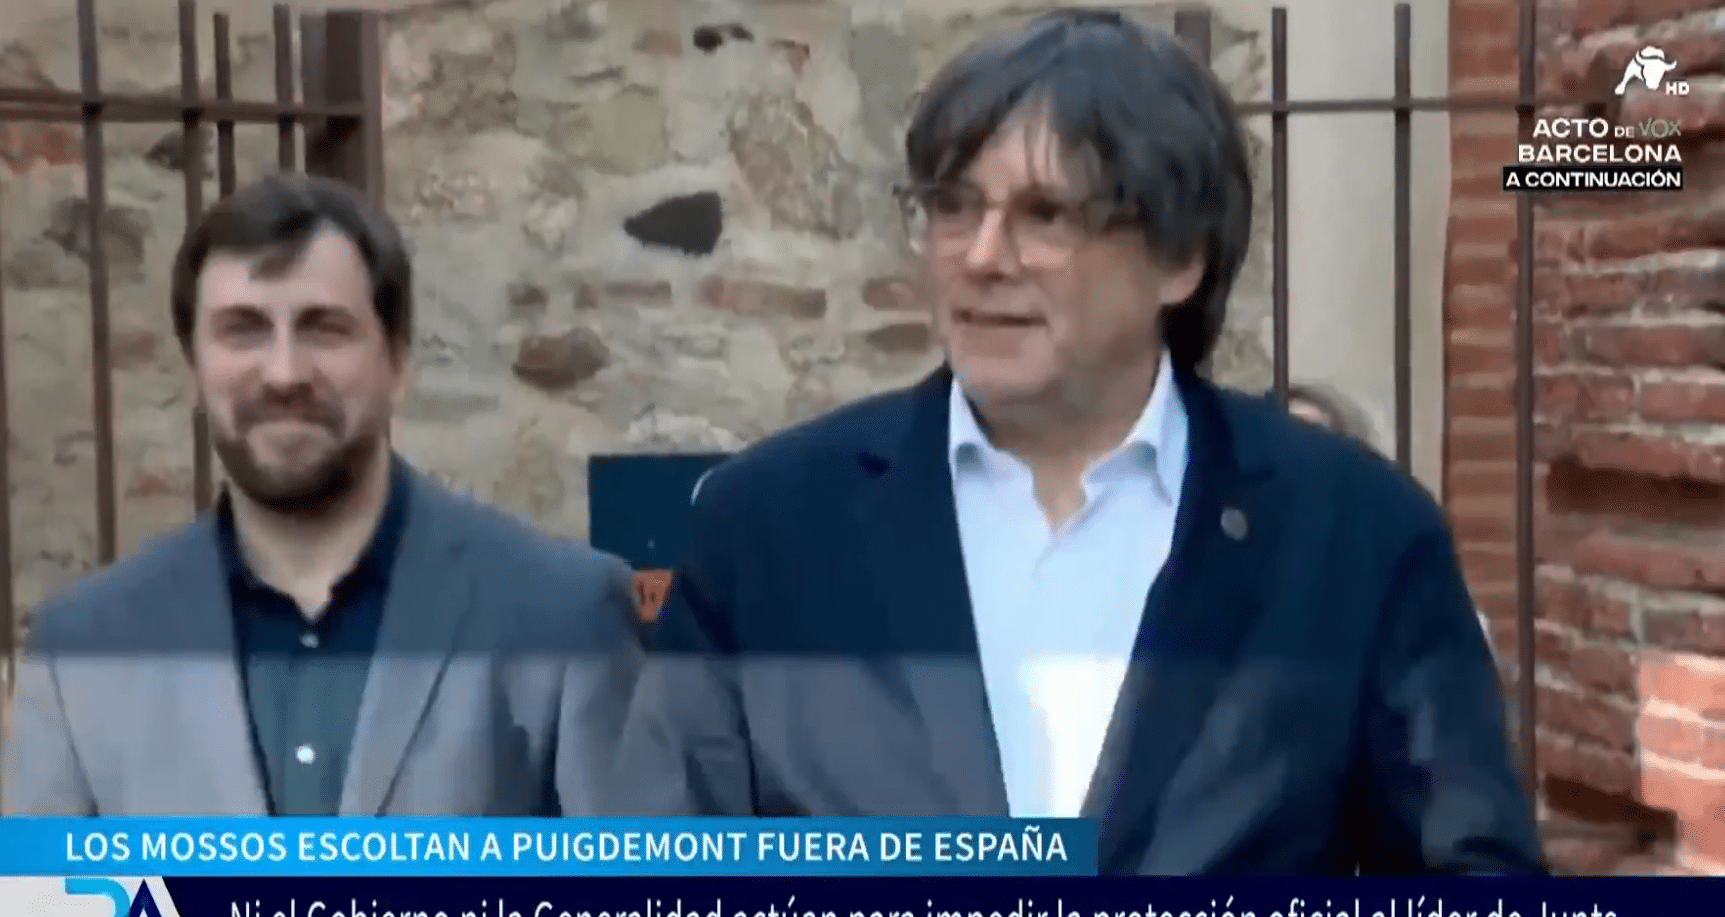  La Generalidad consiente que los Mossos escolten a Puigdemont fuera de España